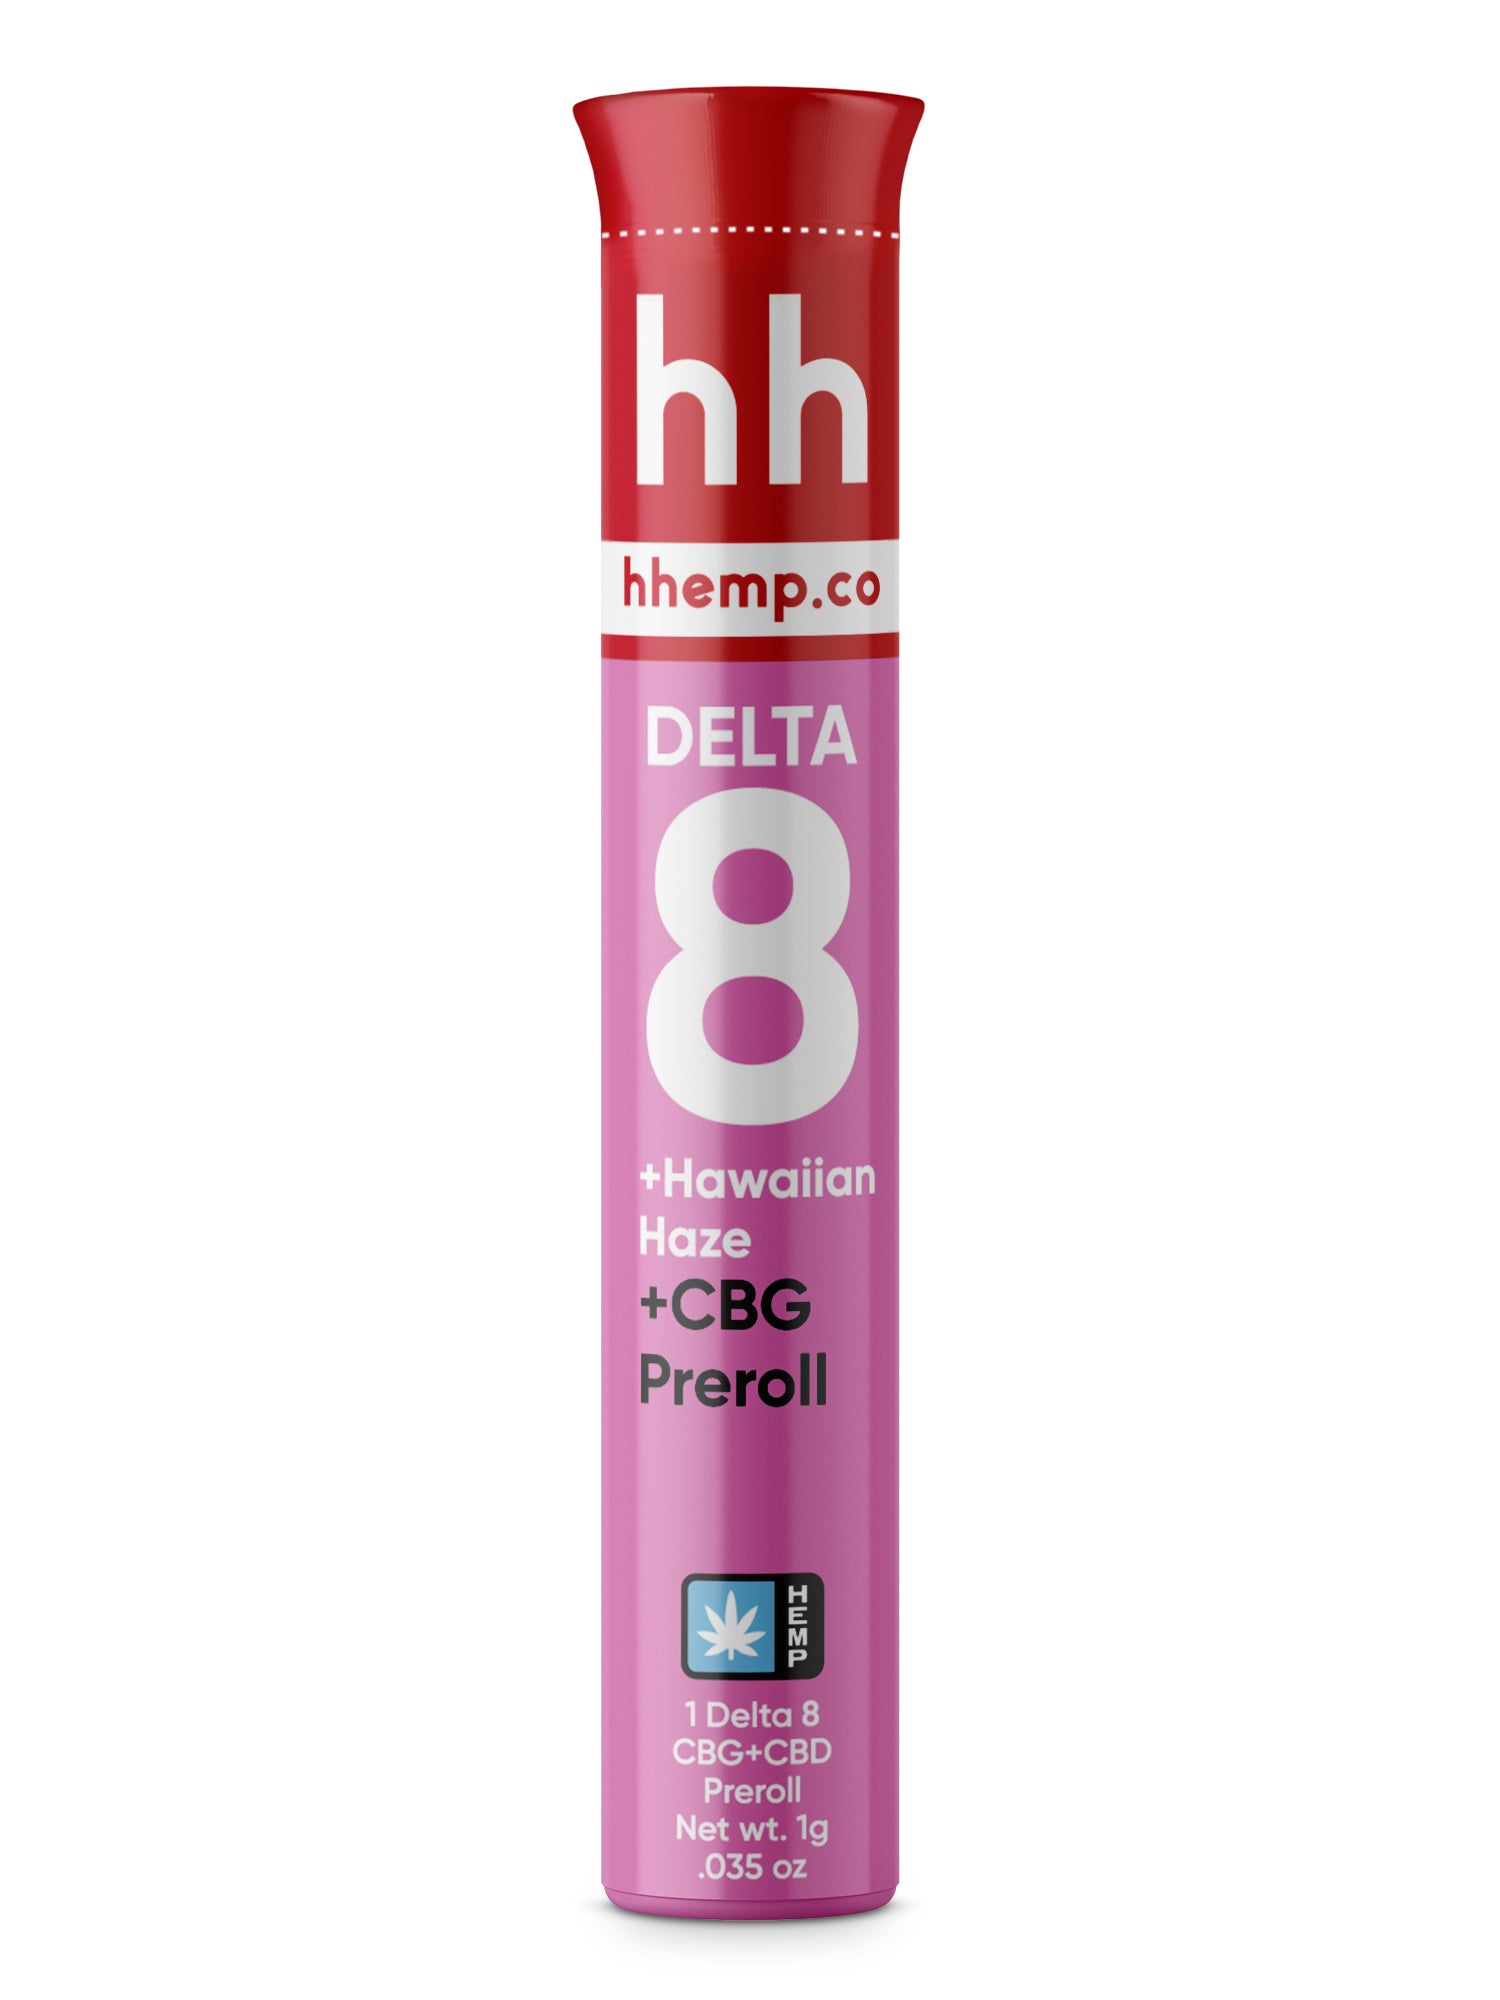 hhemp.co Delta 8 Infused Preroll - CBG + Hawaiian Haze